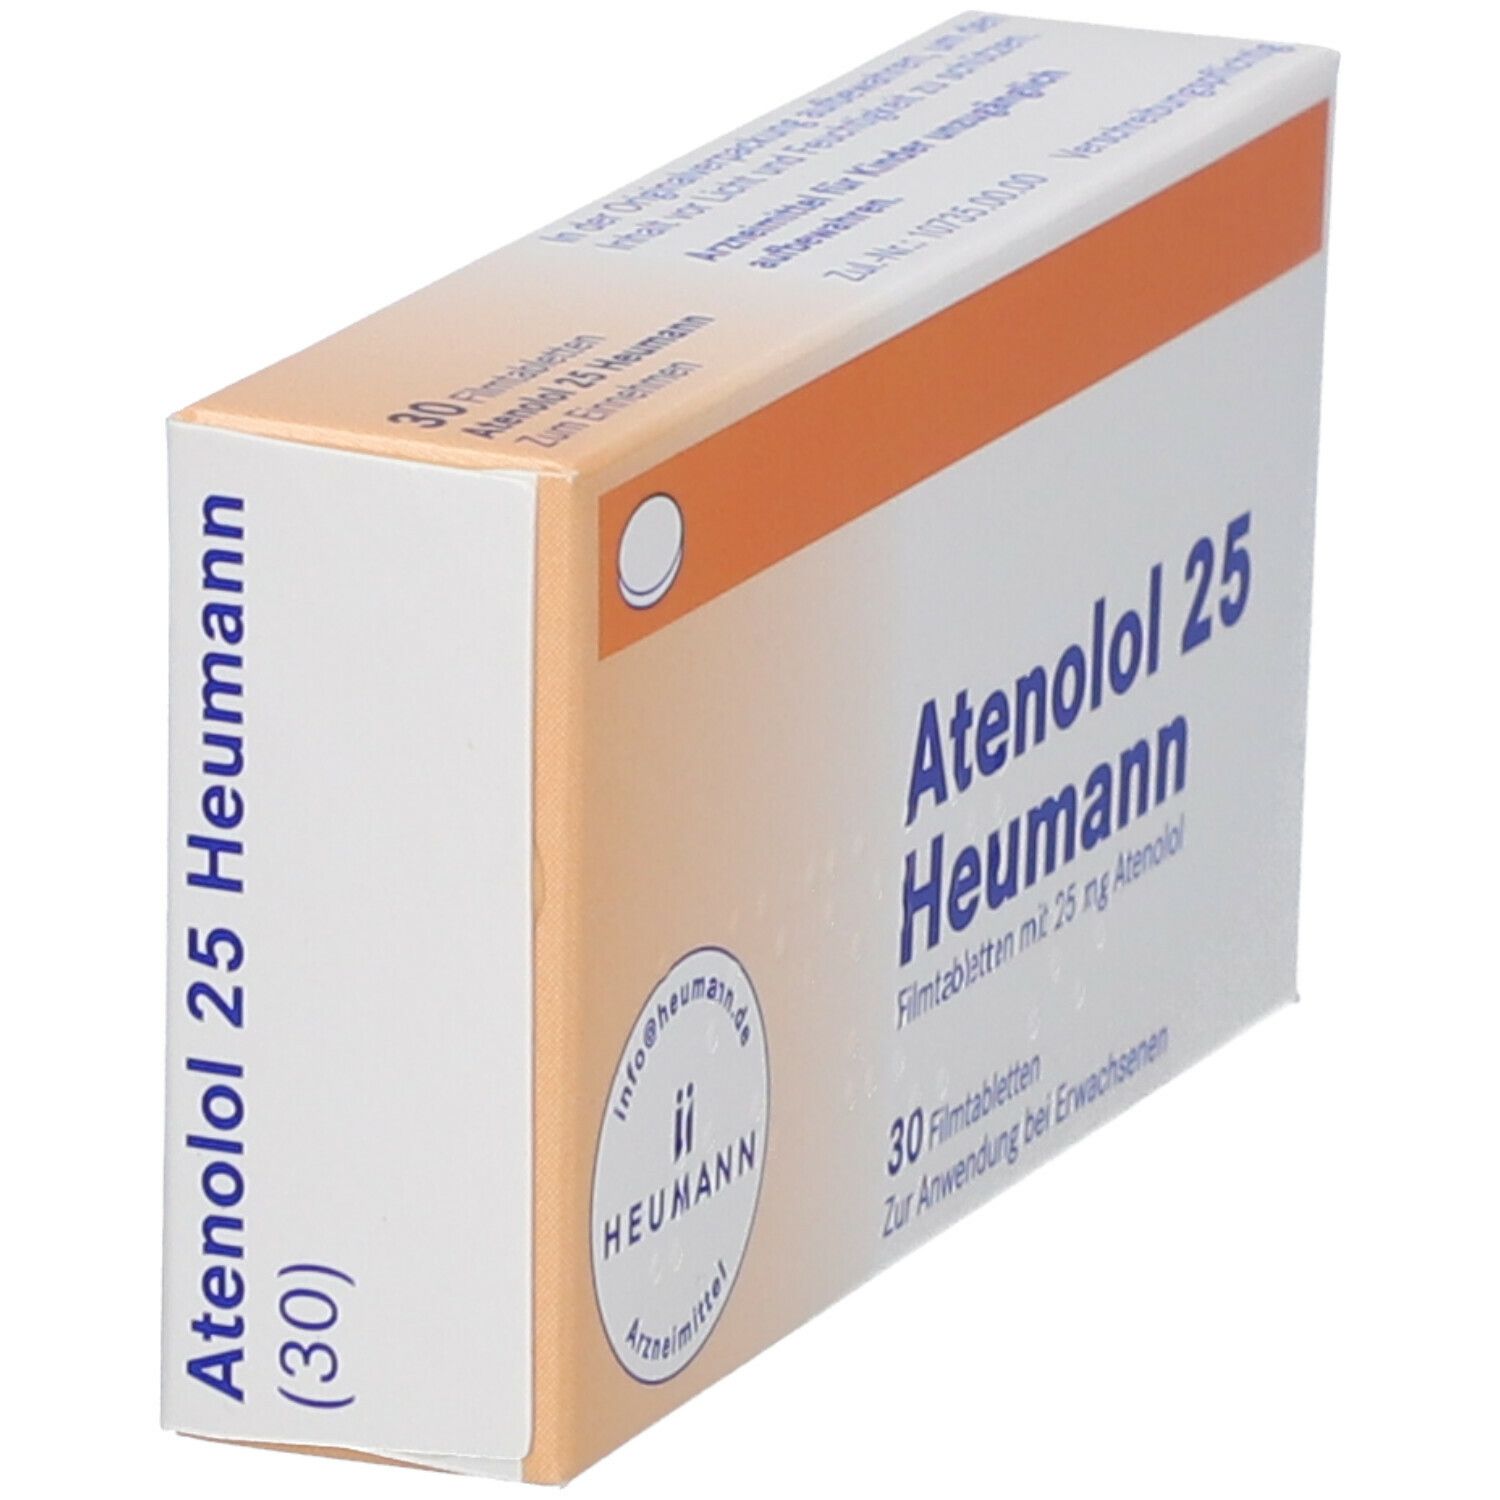 Atenolol 25 Heumann®